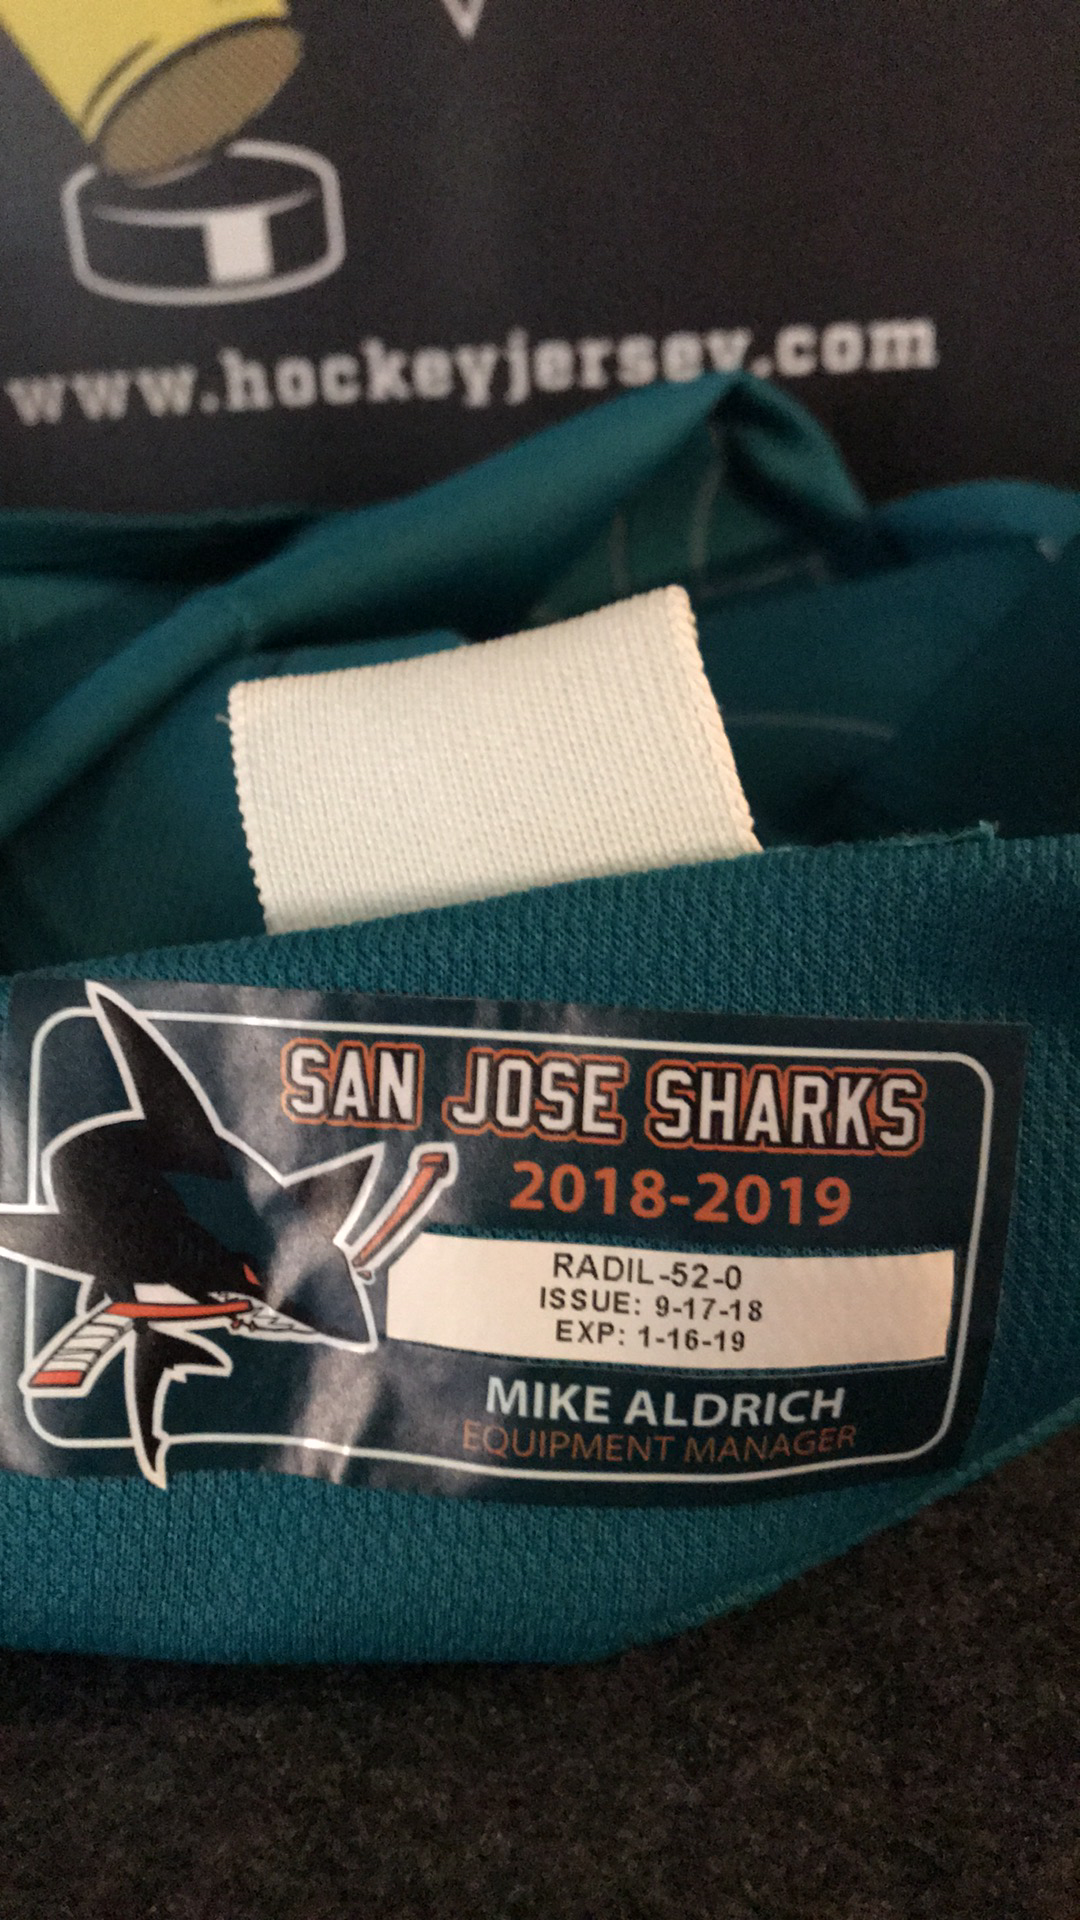 2013-14 San Jose Sharks #64 Vanier Team Issued jersey. Not game worn